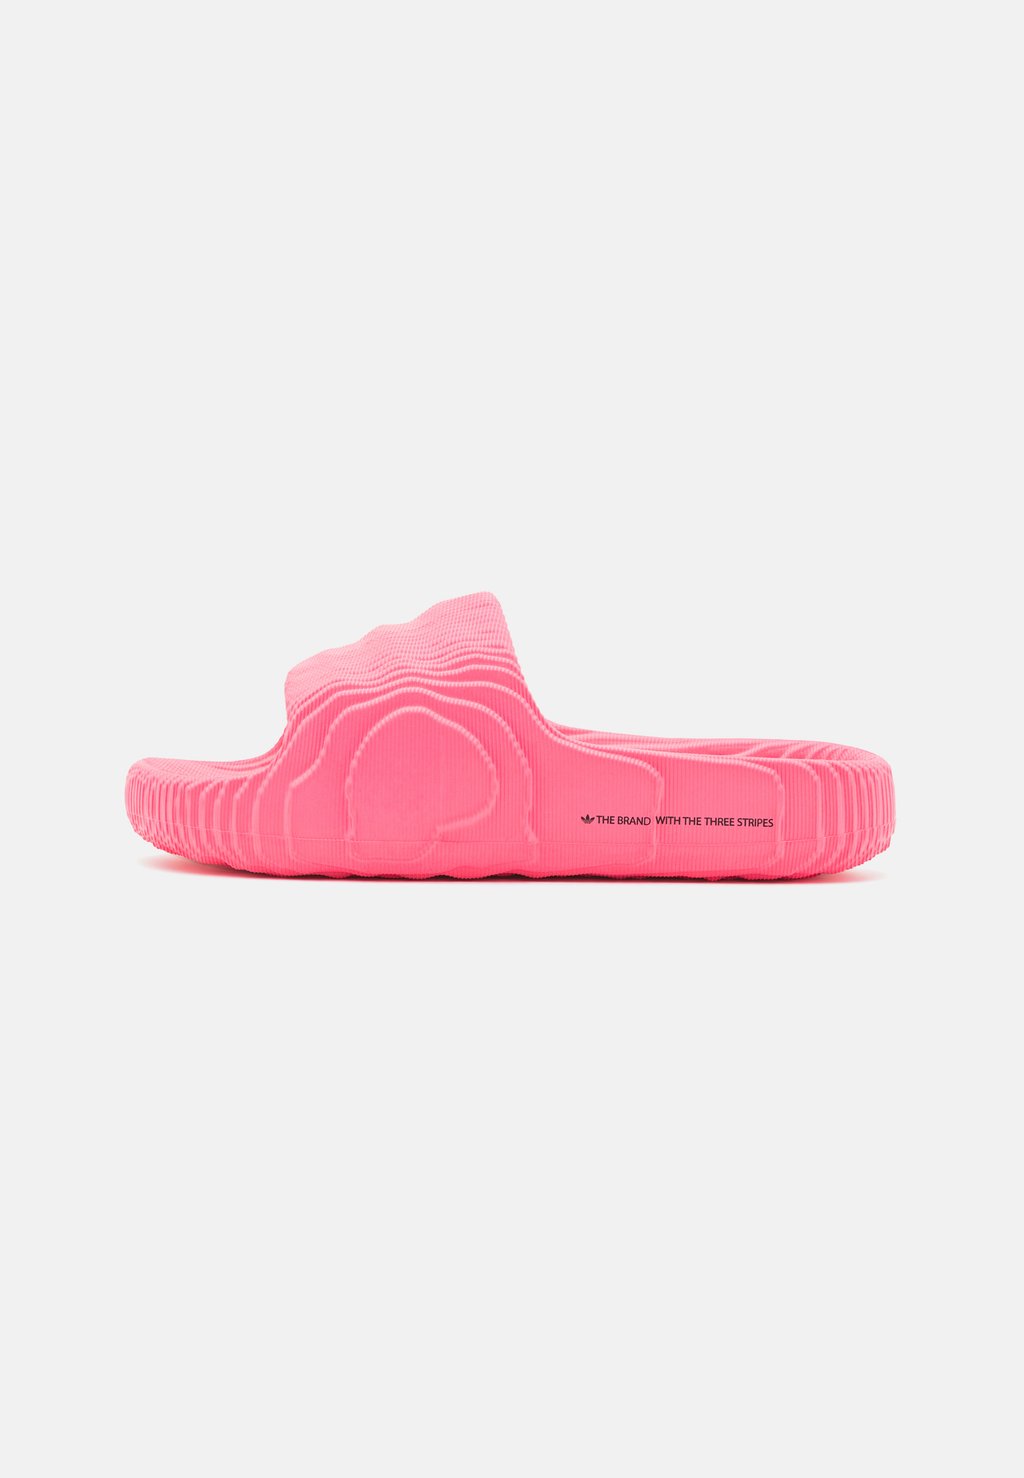 Пляжные тапочки Adilette 22 adidas Originals, цвет lucid pink/core black